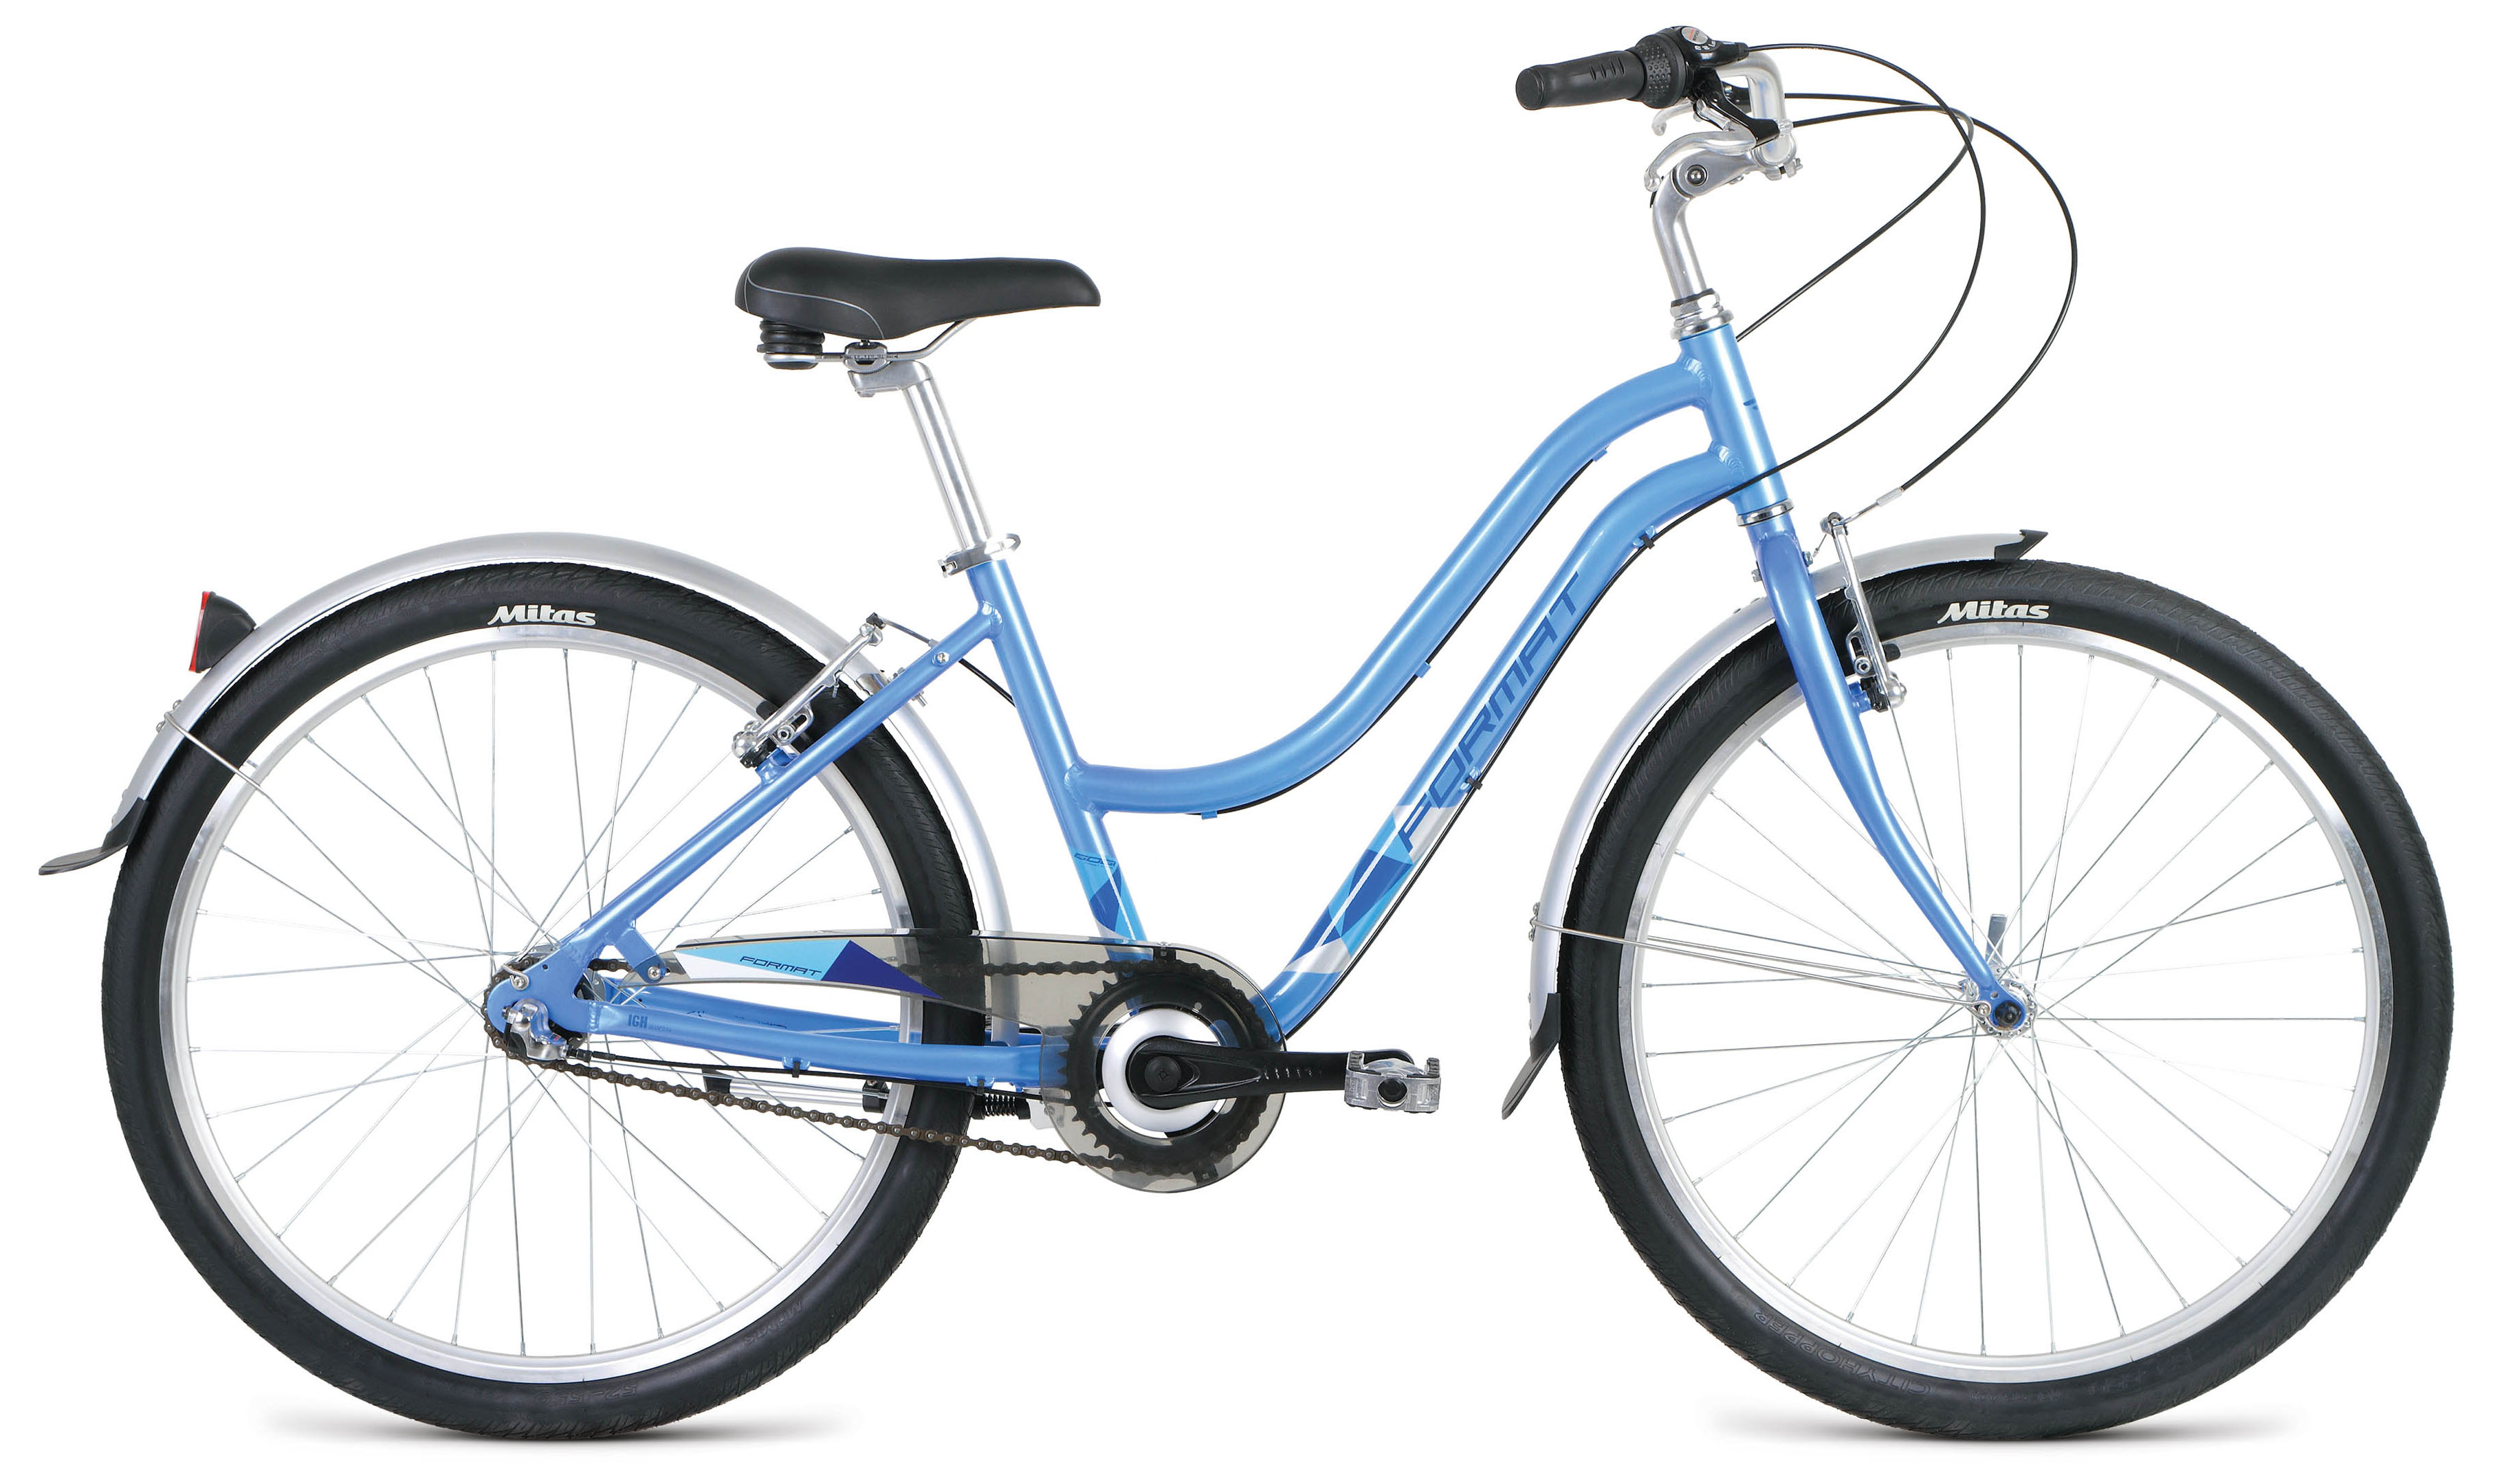  Велосипед Format 7732 26 2019